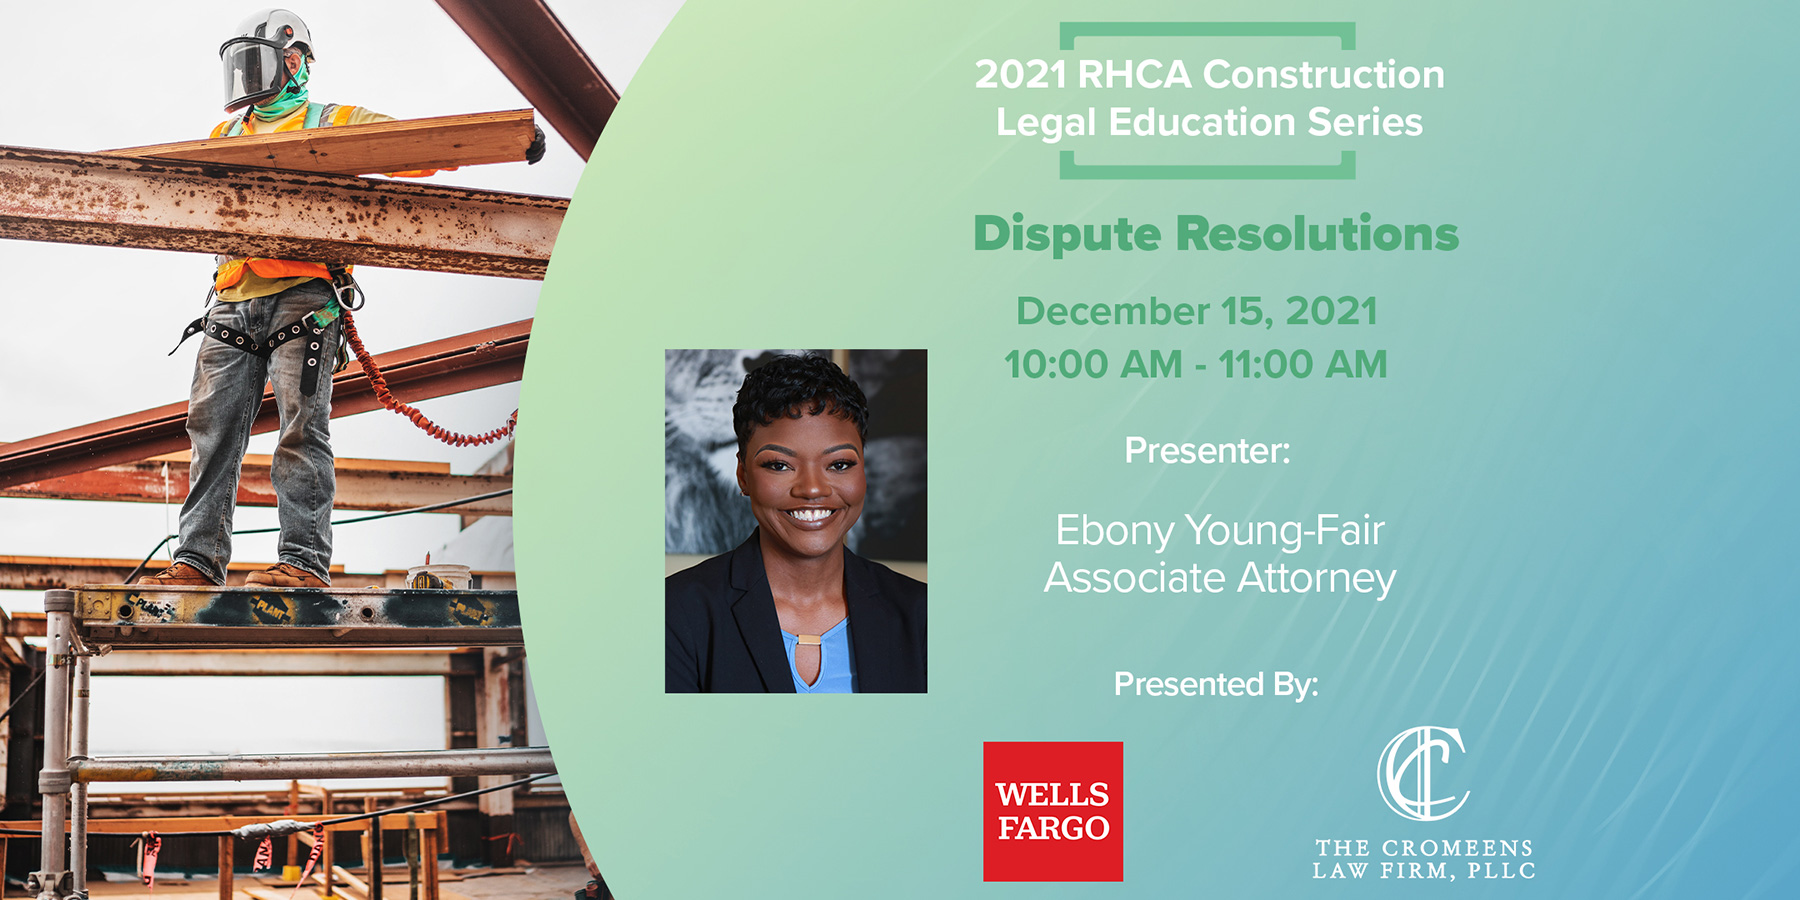 Dispute Resolution Webinar with RHCA and Wells Fargo – Dec. 15th